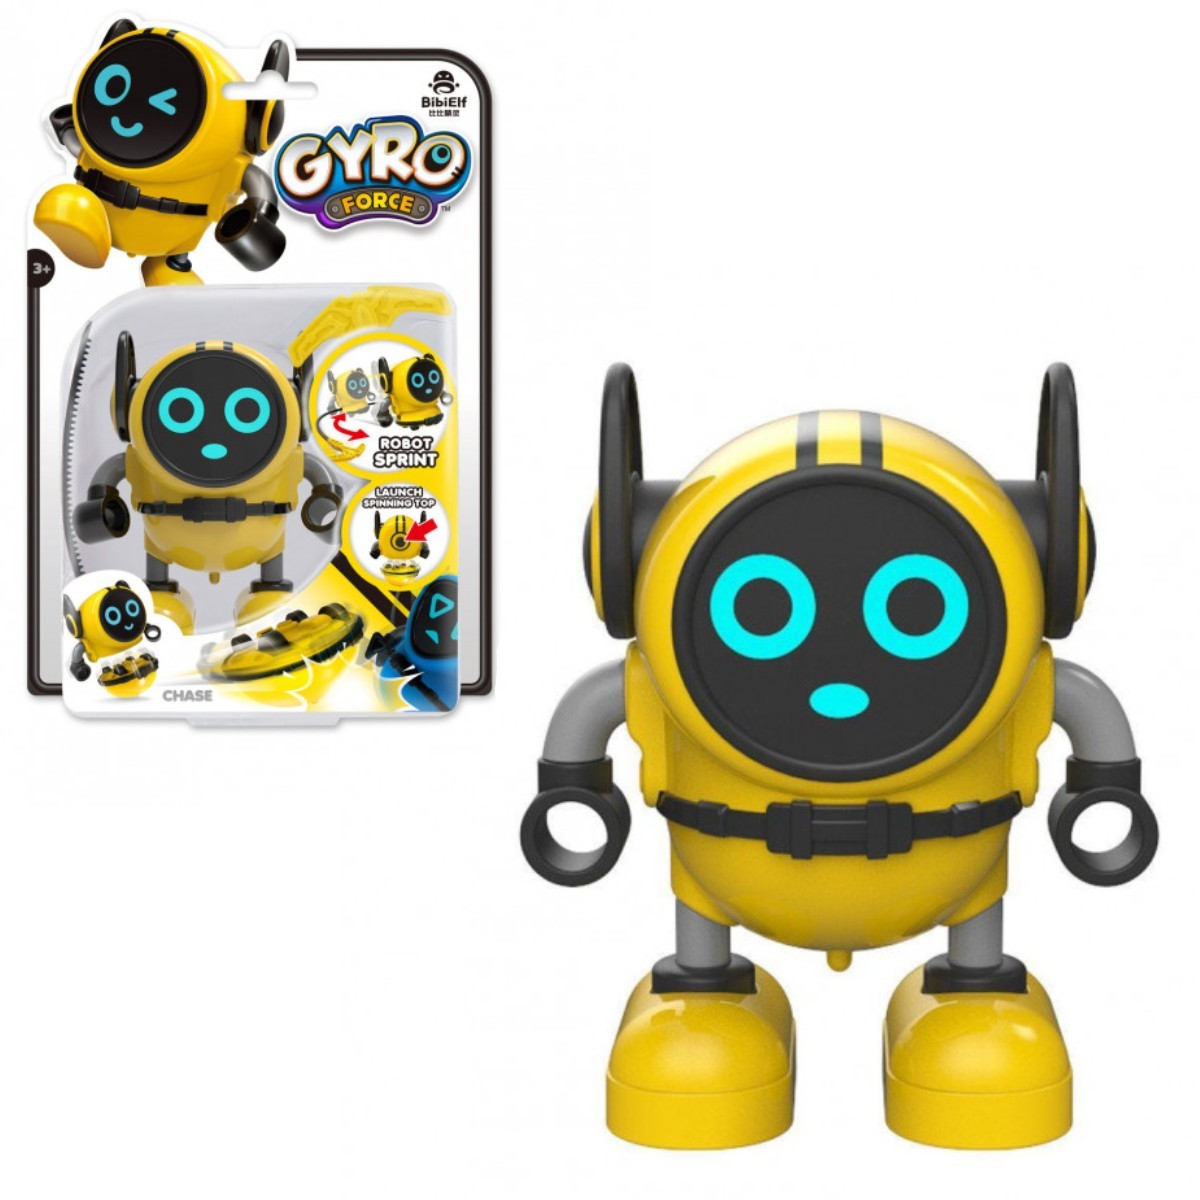 Робот gyro. Робот волчок bibielf Gyro. Gyro Force Robot. Gyro Robot игрушка. Игрушки (BB-2).